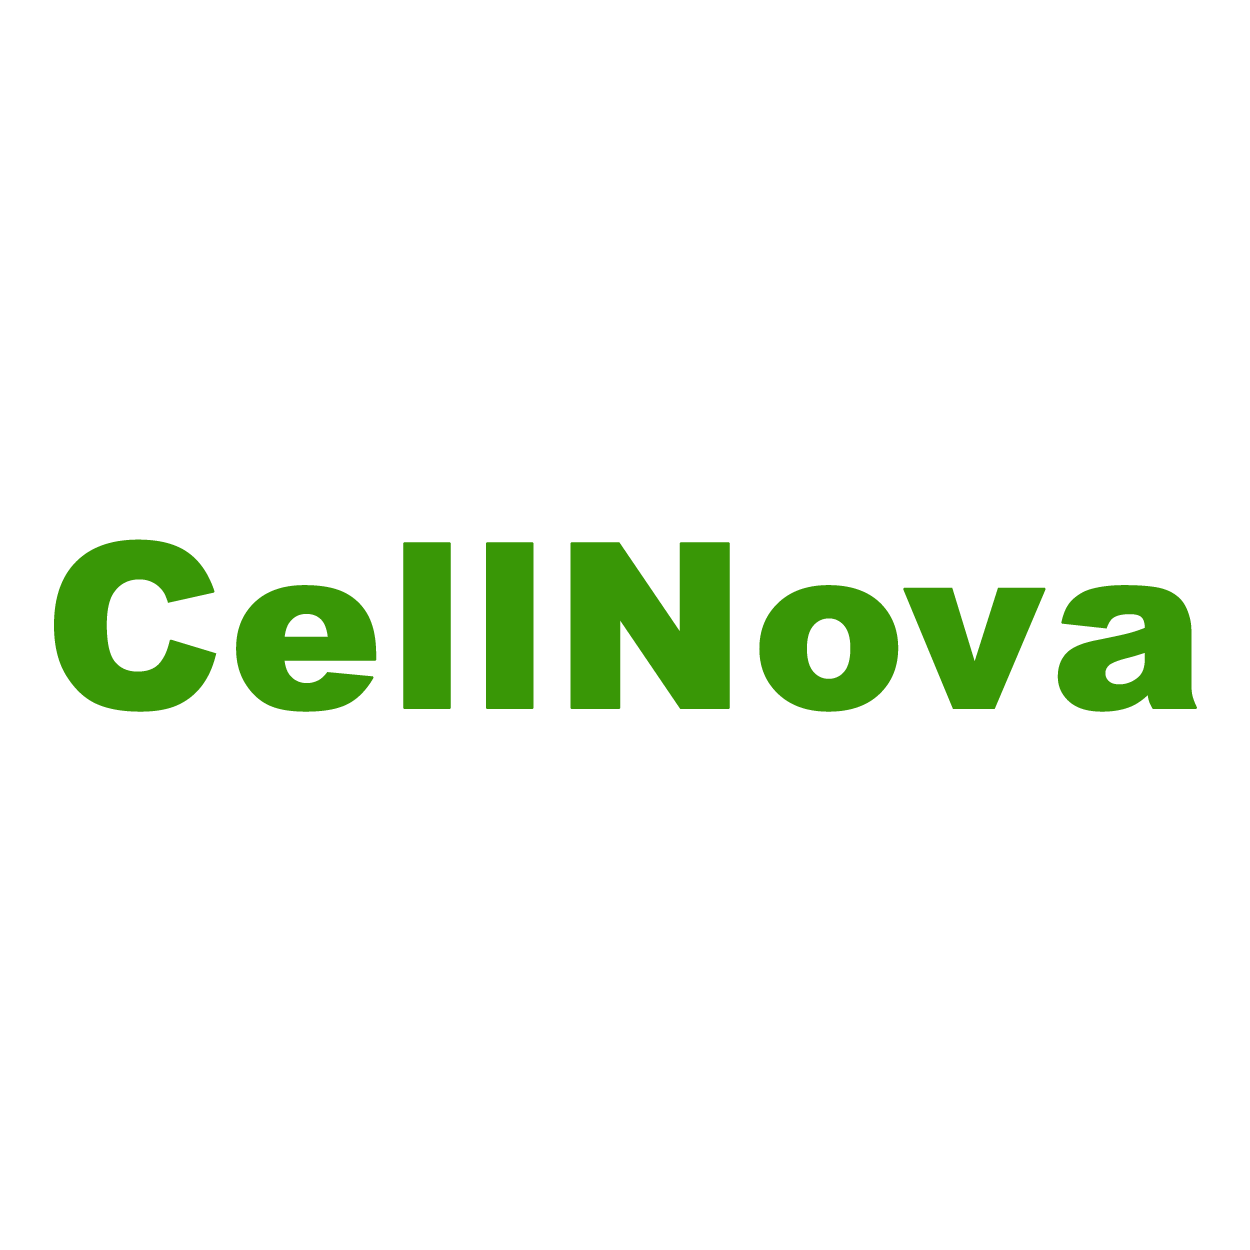 CellNova